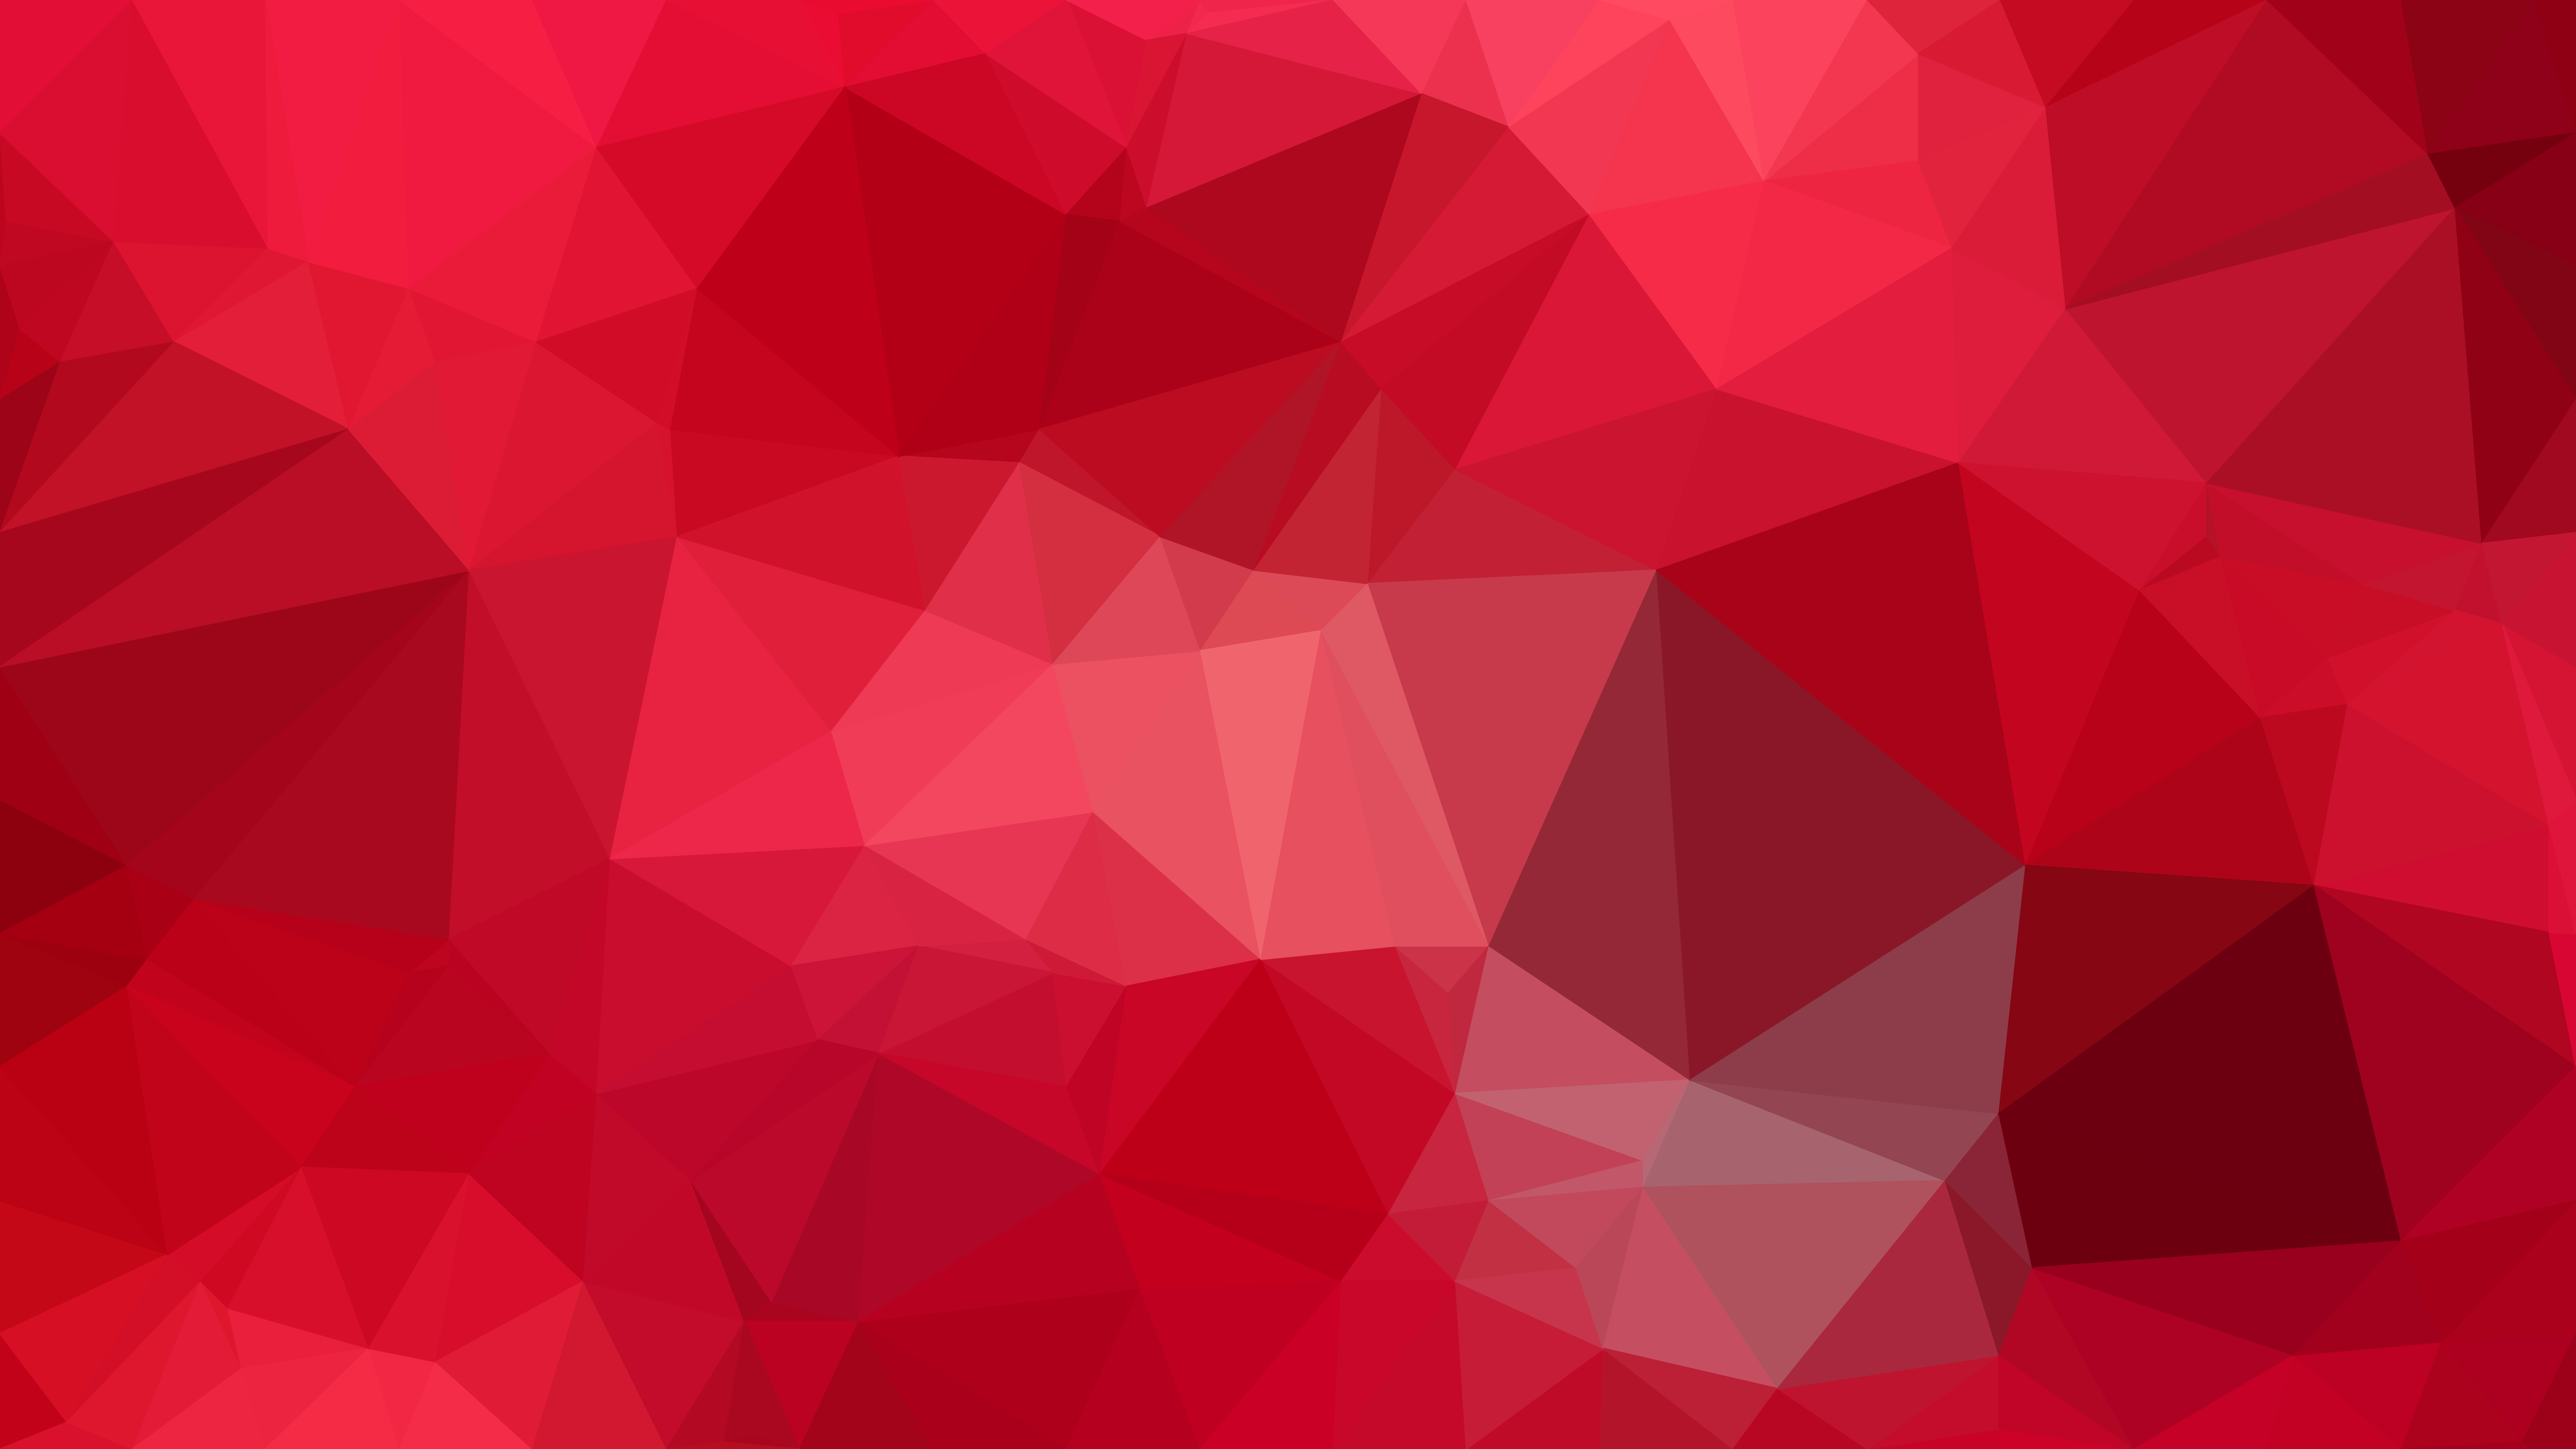 Red Background Abstract Abstract Red Background By Creativeye99